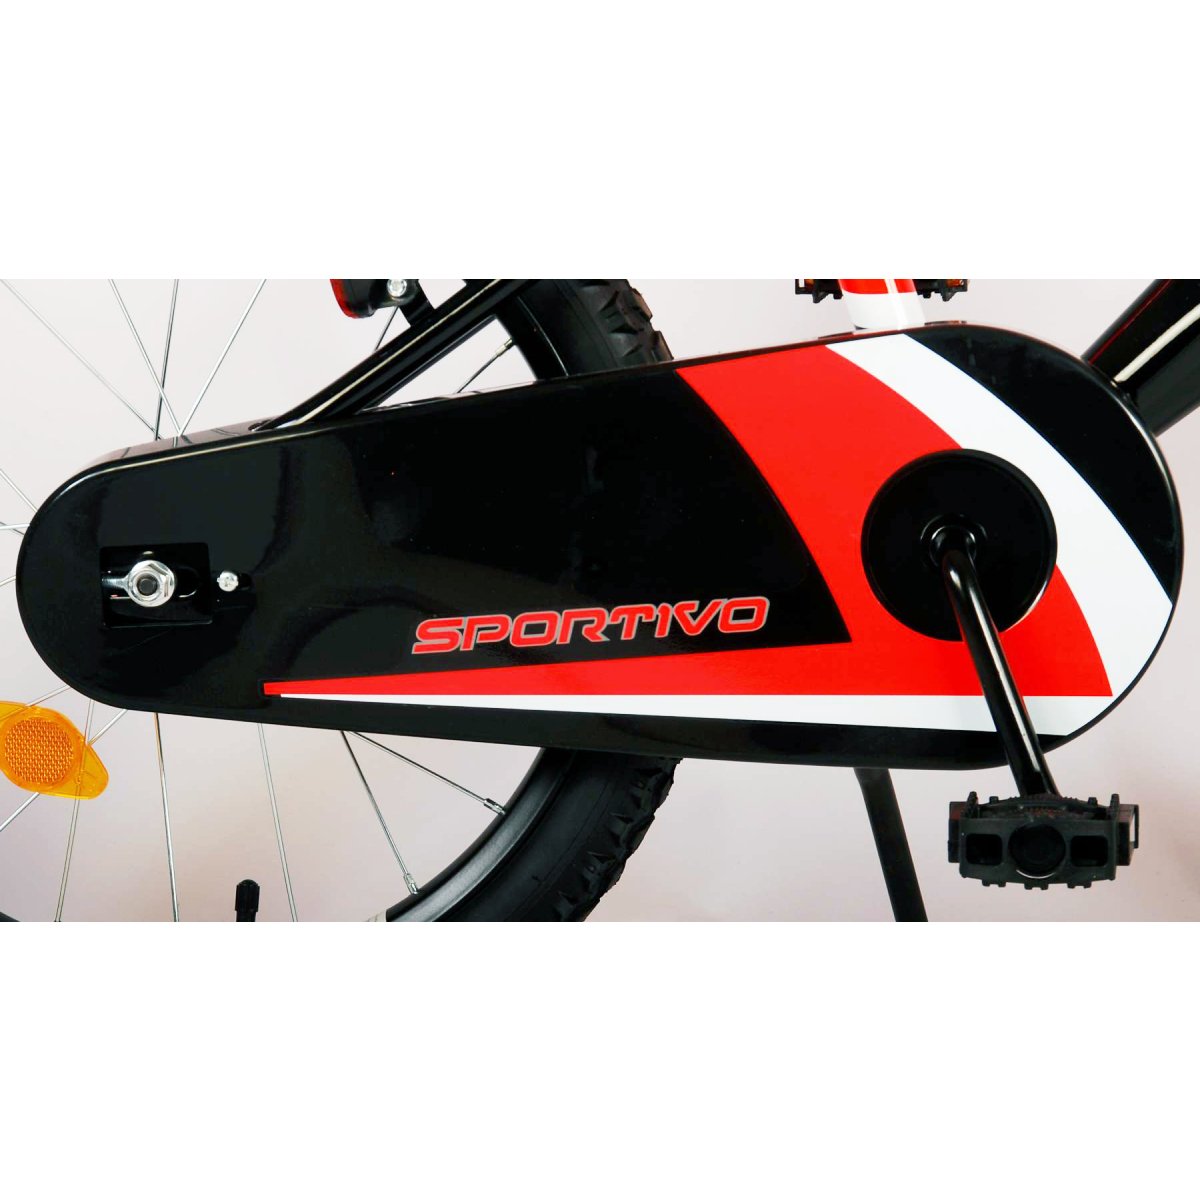 Vaikiškas dviratis VOLARE Sportivo, 18 dydis, juodas/oranžinis - 4